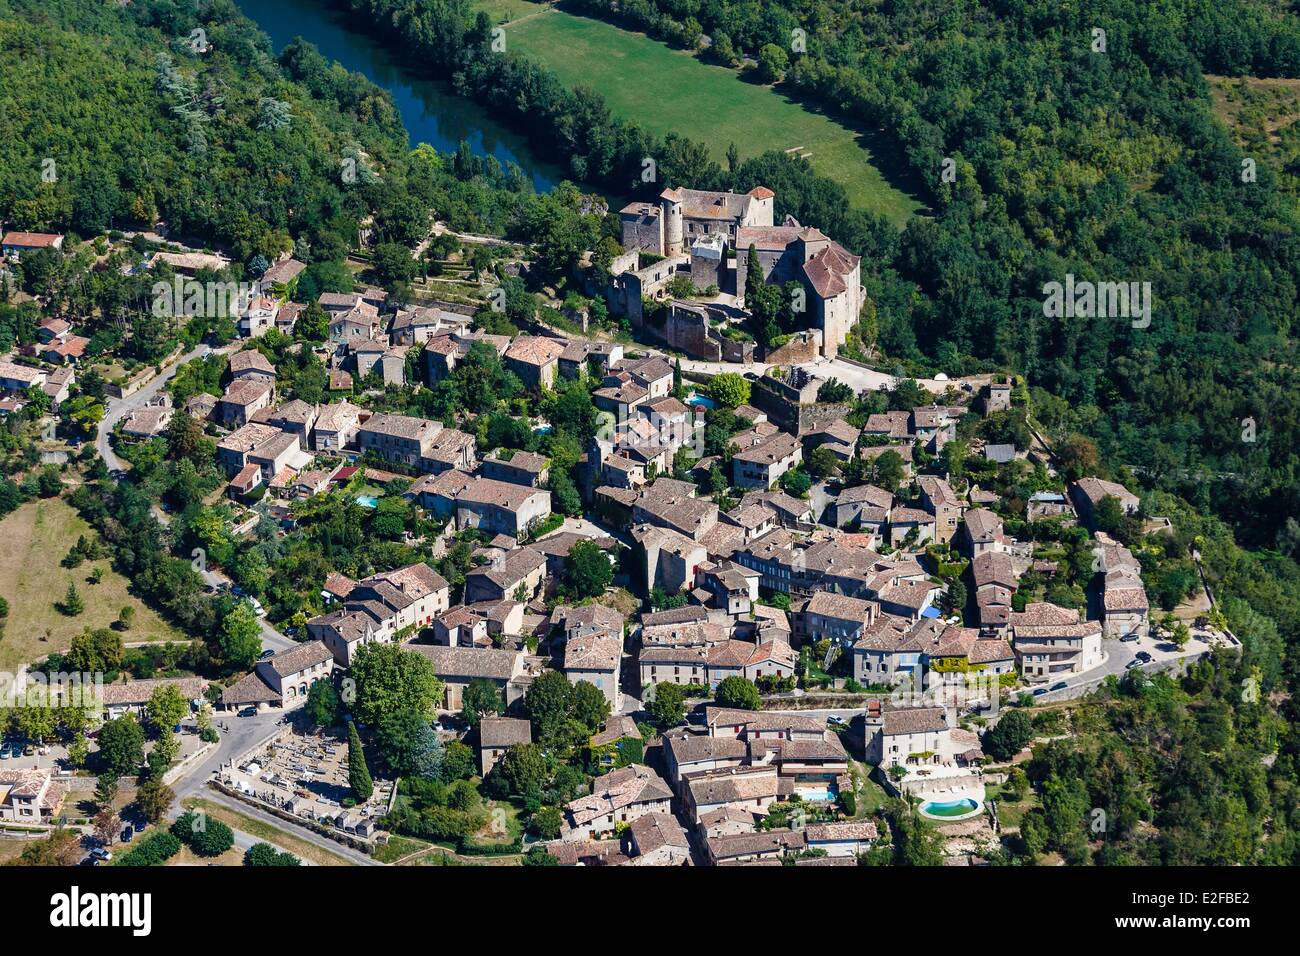 France Tarn et Garonne Bruniquel labelled Les Plus Beaux Villages de France (The Most Beautiful Villages of France) the village Stock Photo